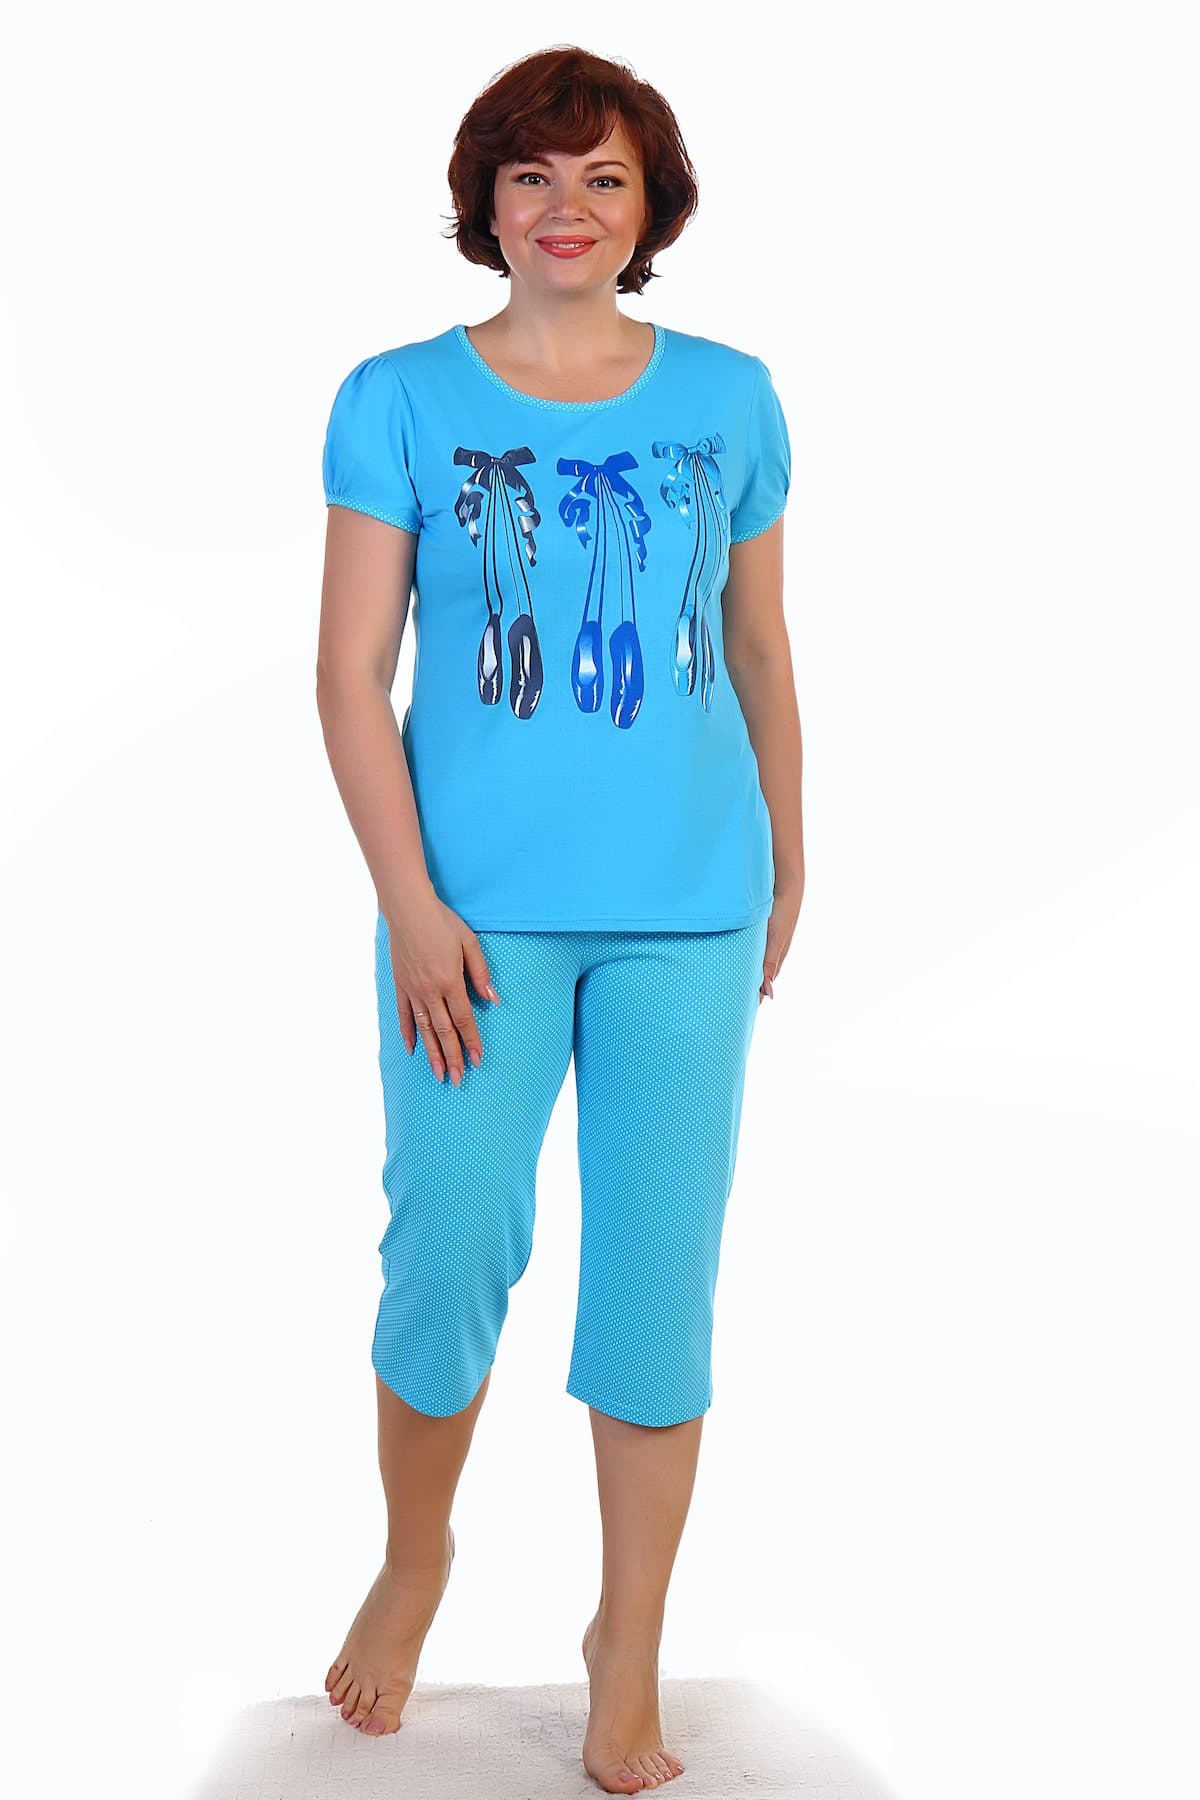 Пижама 52 размера. Голубая пижама для женщин. Женская пижама майка с бриджами. Пижама синяя женская кулирка. Медицинская голубая пижама с белой футболкой.